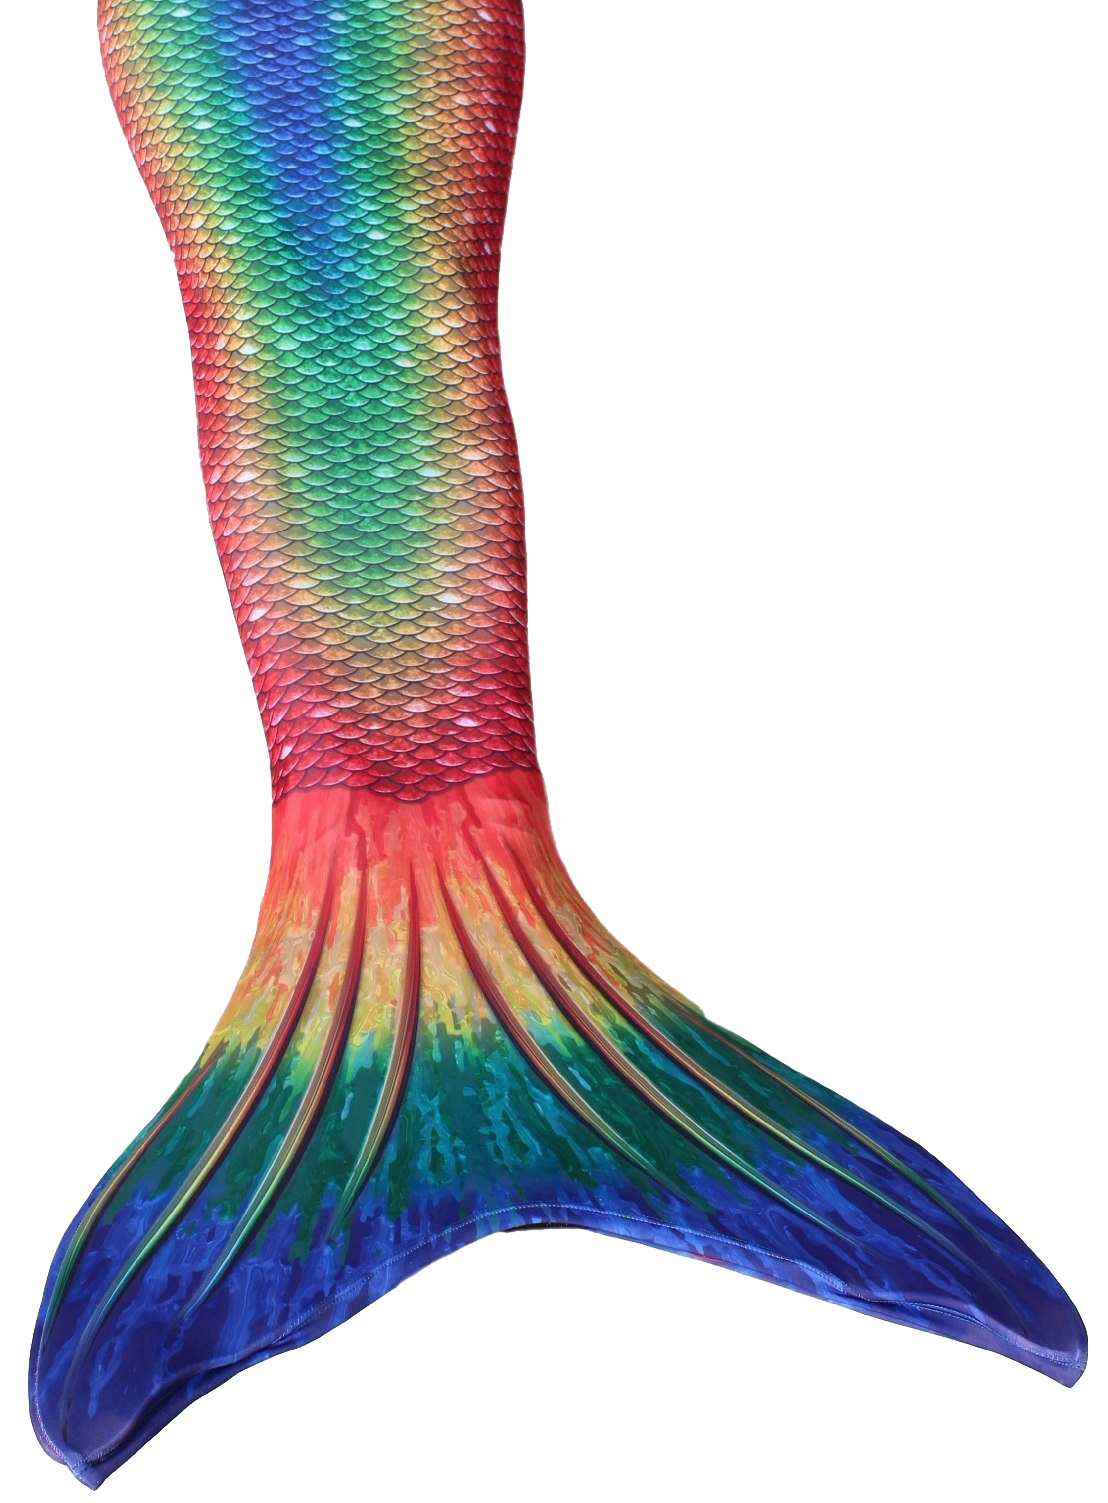 Mermaid Tail PNG